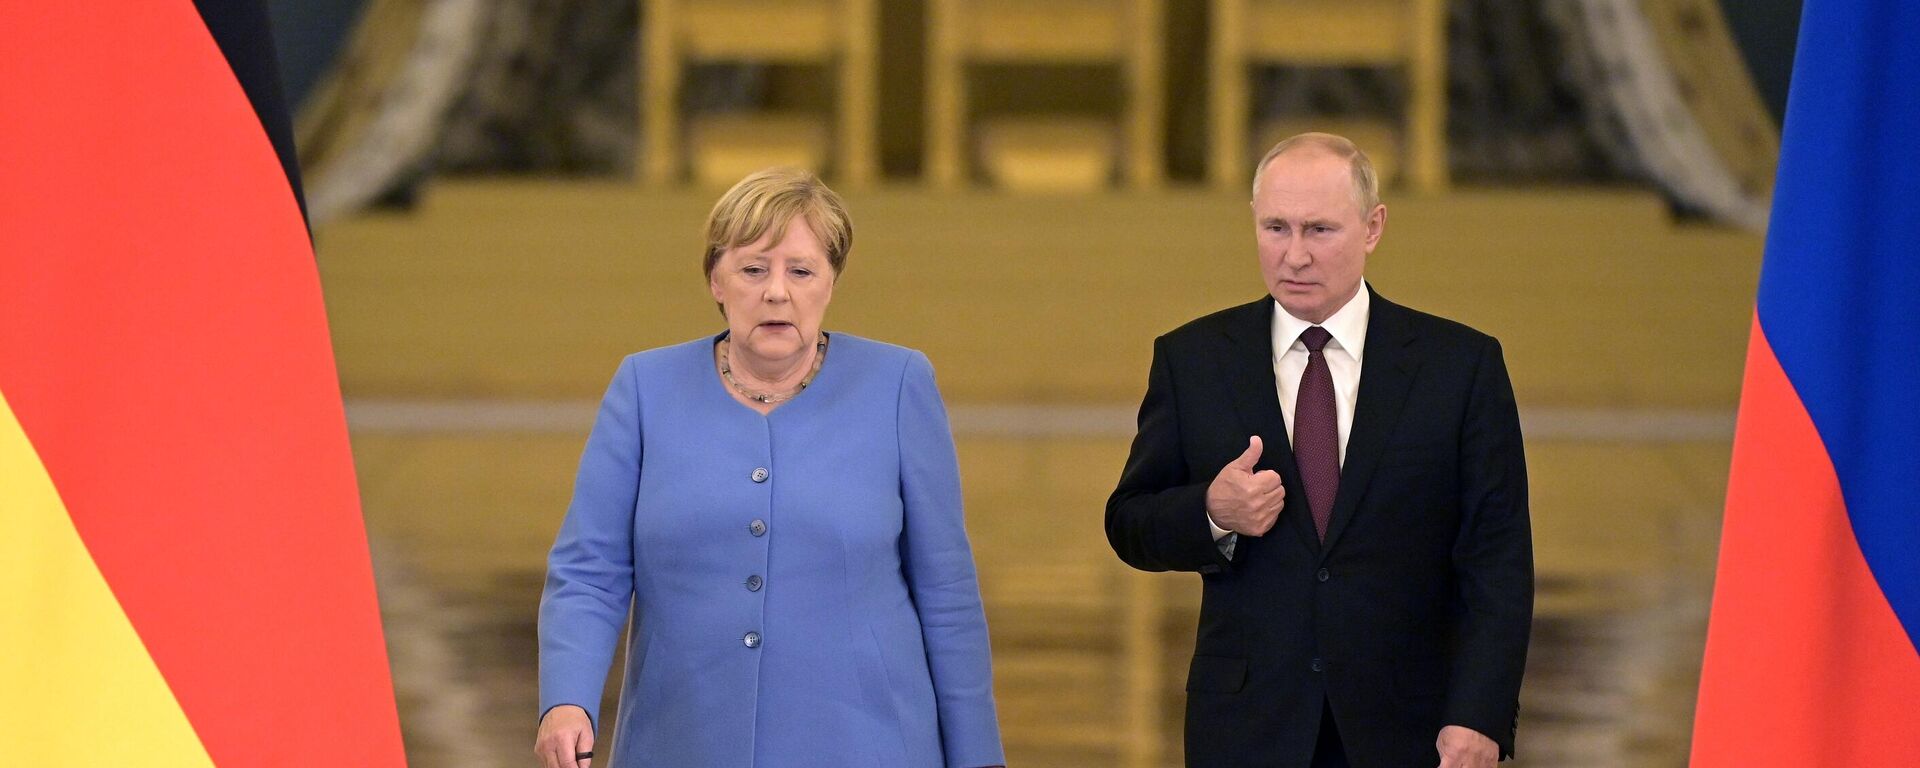 Vokietijos kanclerė Angela Merkel ir Rusijos prezidentas Vladimias Putinas - Sputnik Lietuva, 1920, 23.10.2021